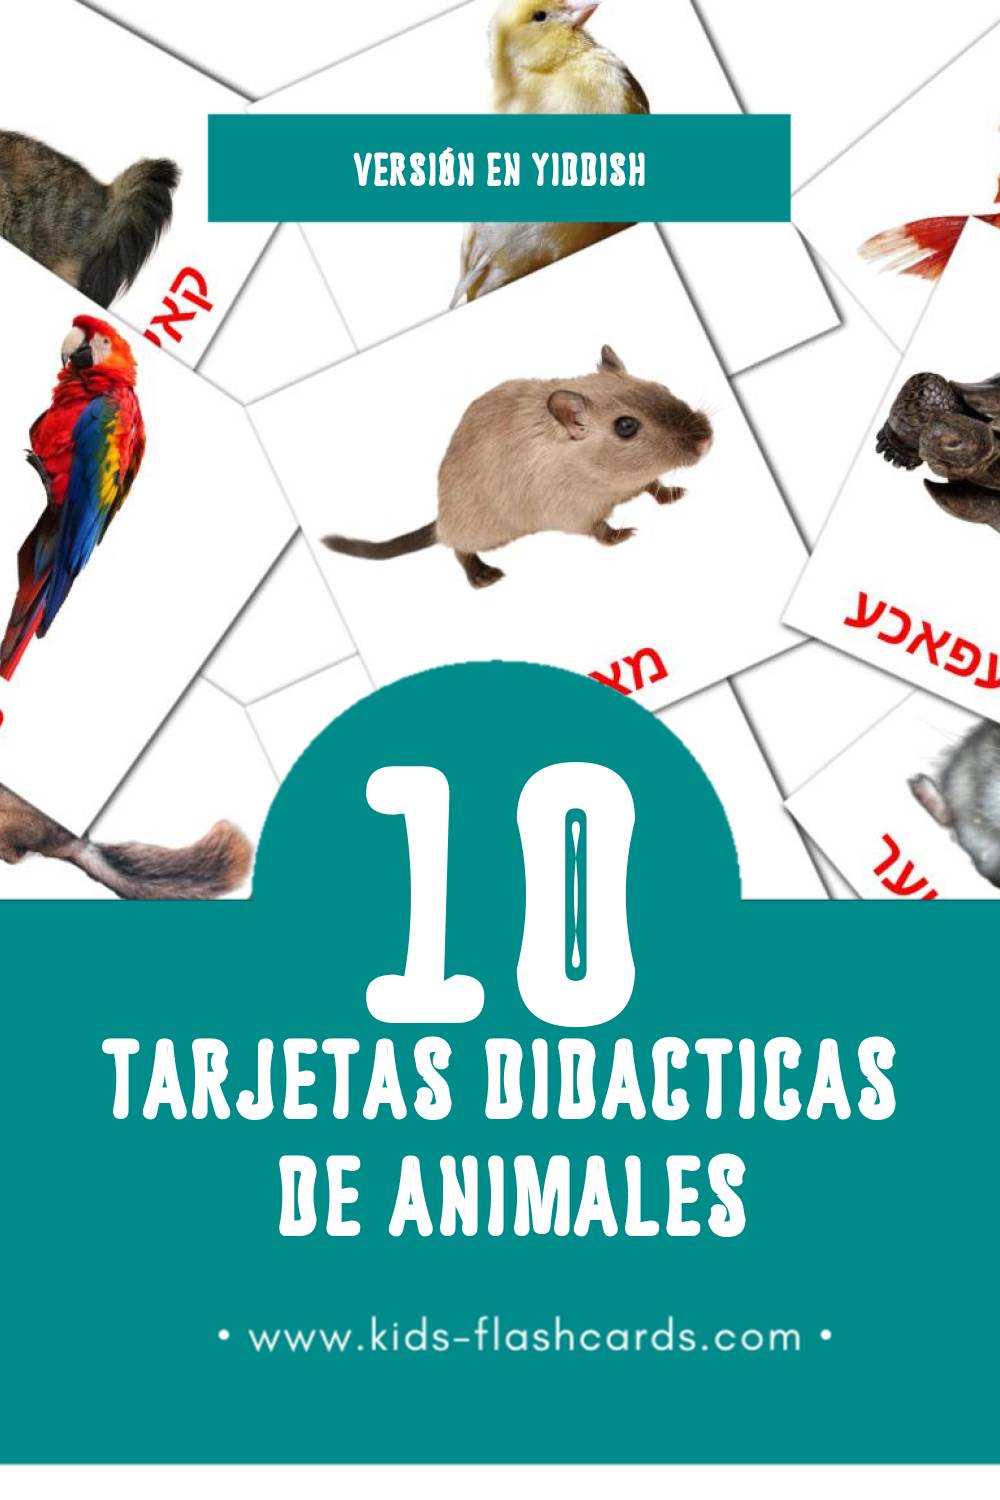 Tarjetas visuales de חיות para niños pequeños (10 tarjetas en Yiddish)